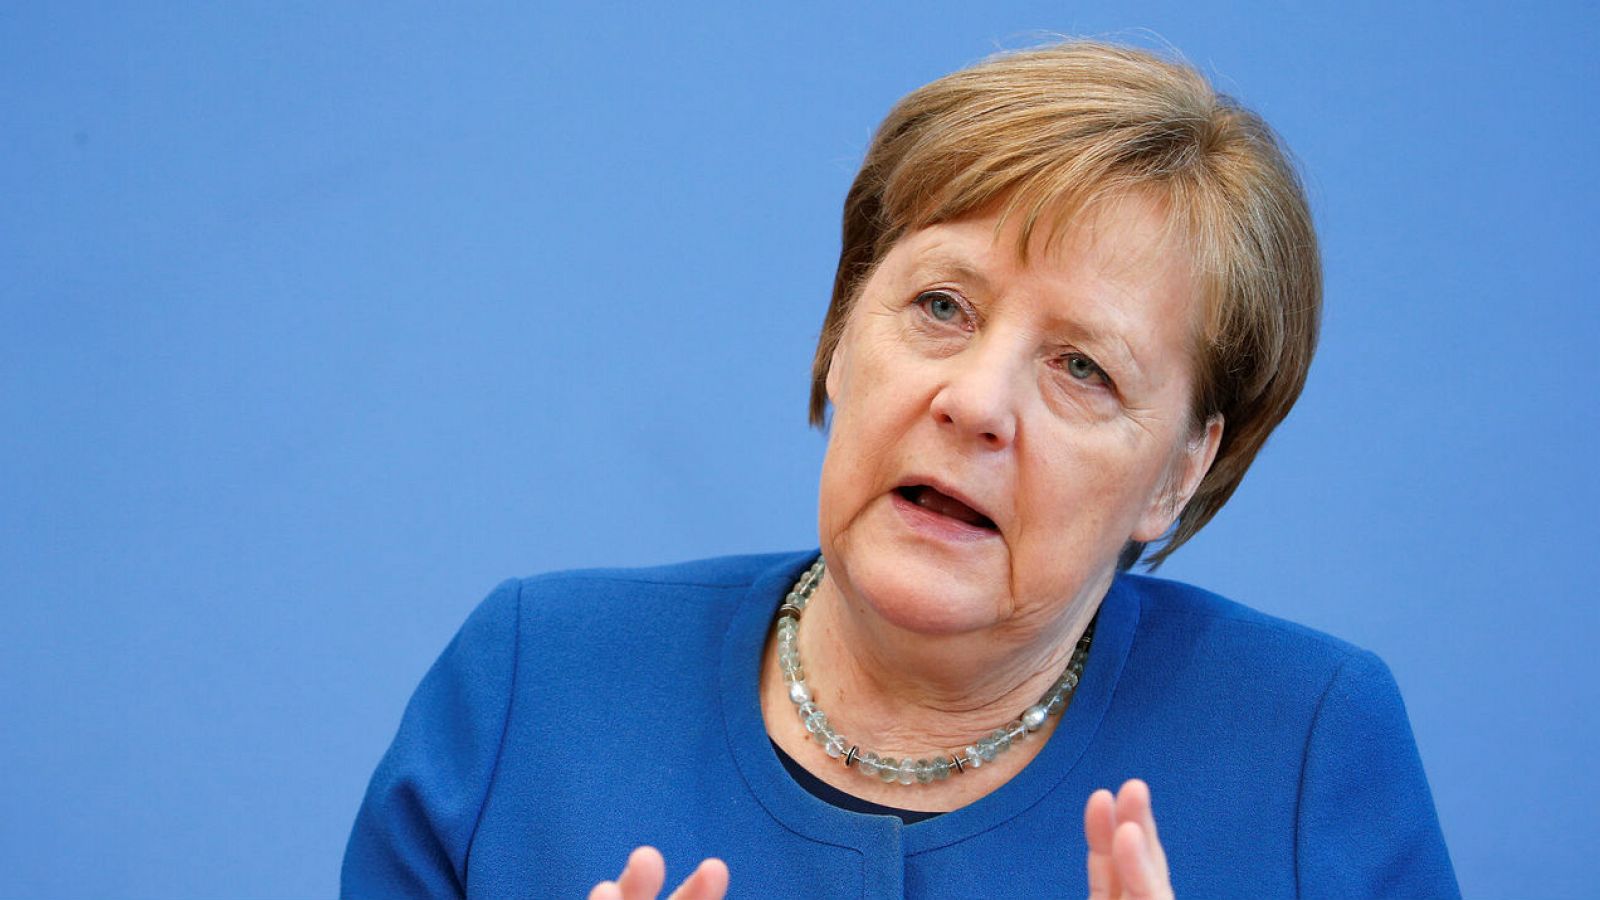 La canciller alemana Angela Merkel durante una rueda de prensa sobre el coronavirus en Berlín.